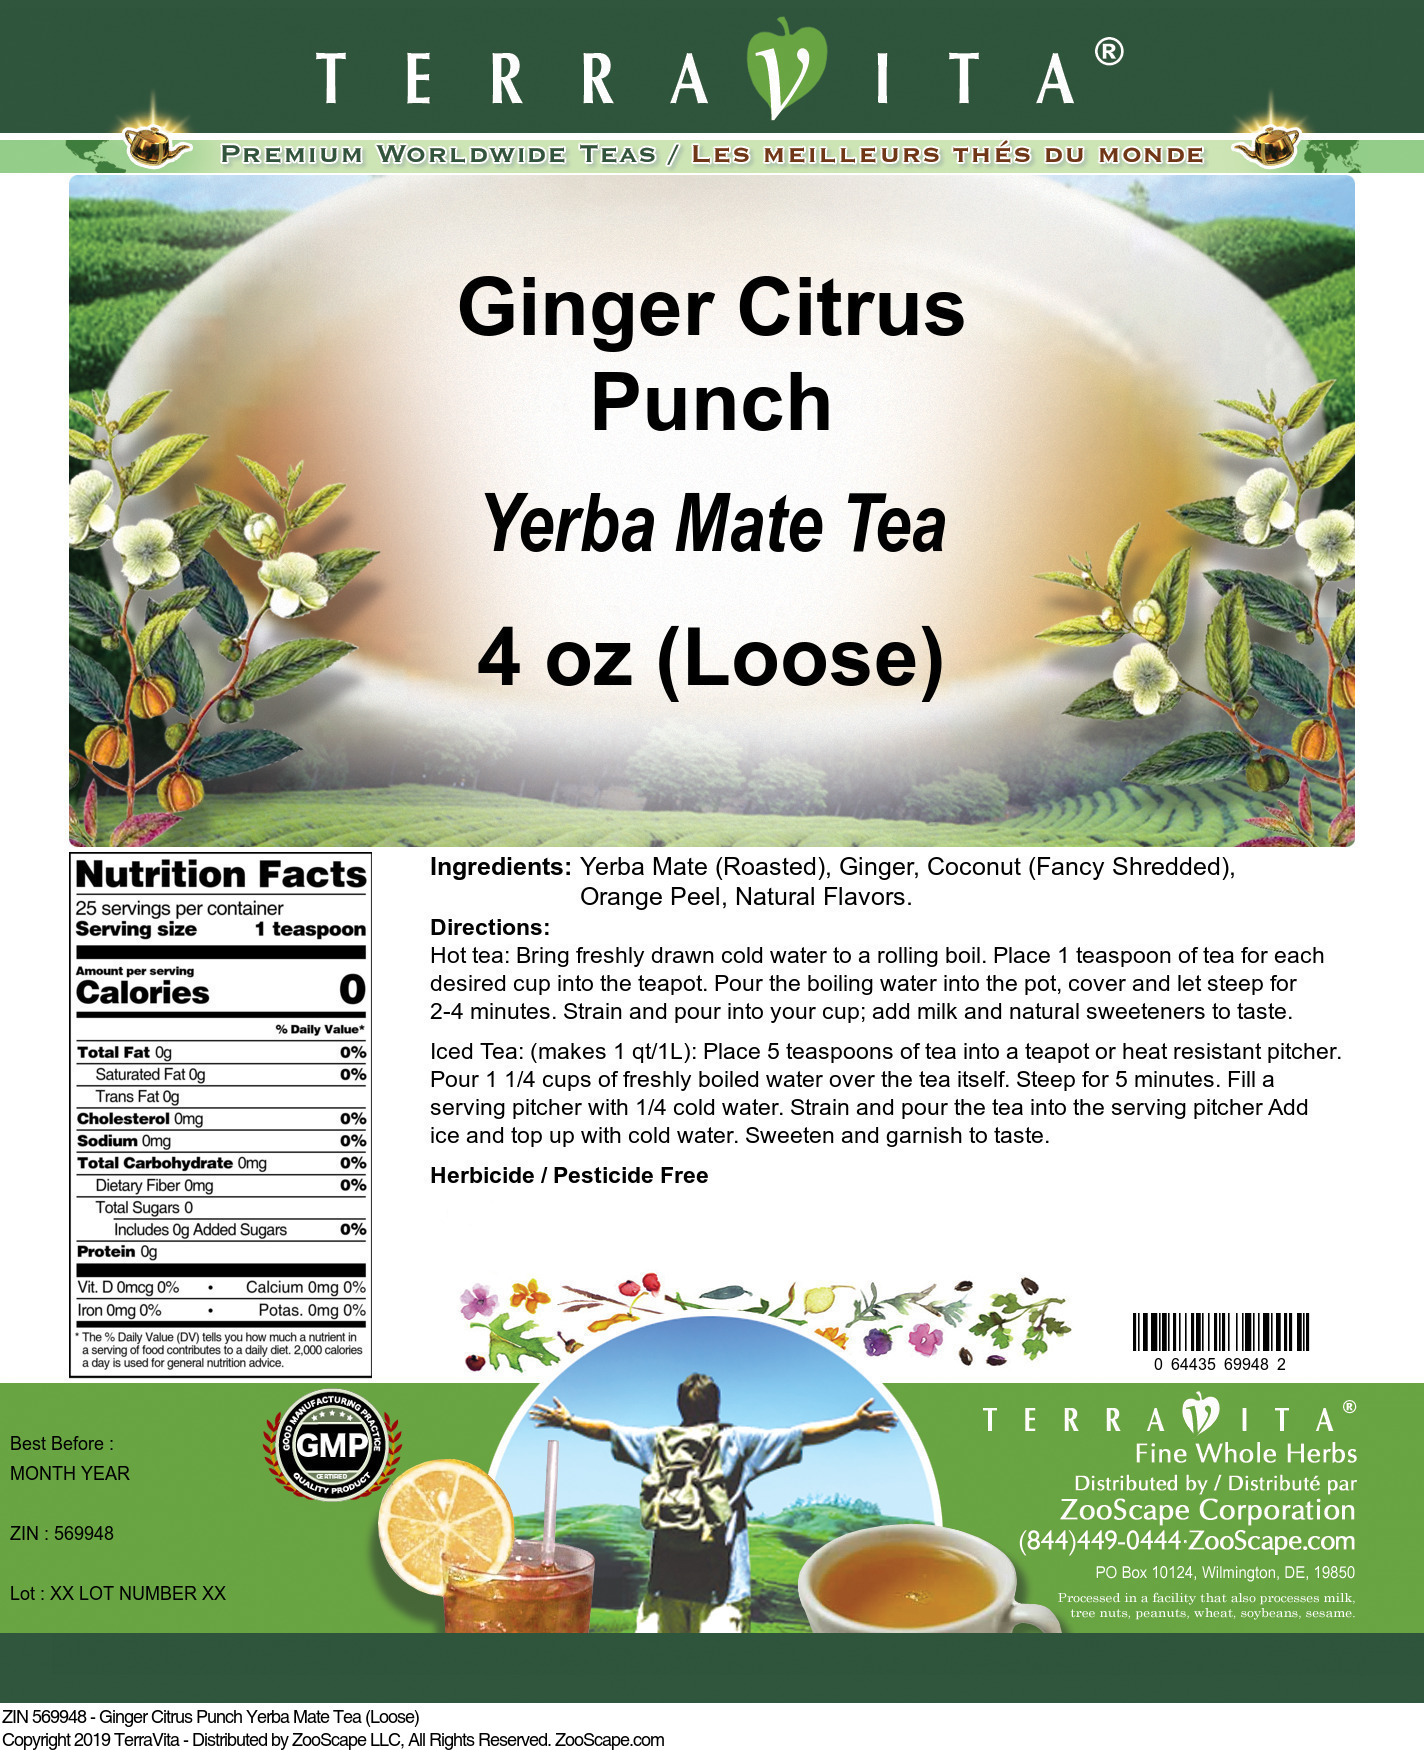 Ginger Citrus Punch Yerba Mate Tea (Loose) - Label